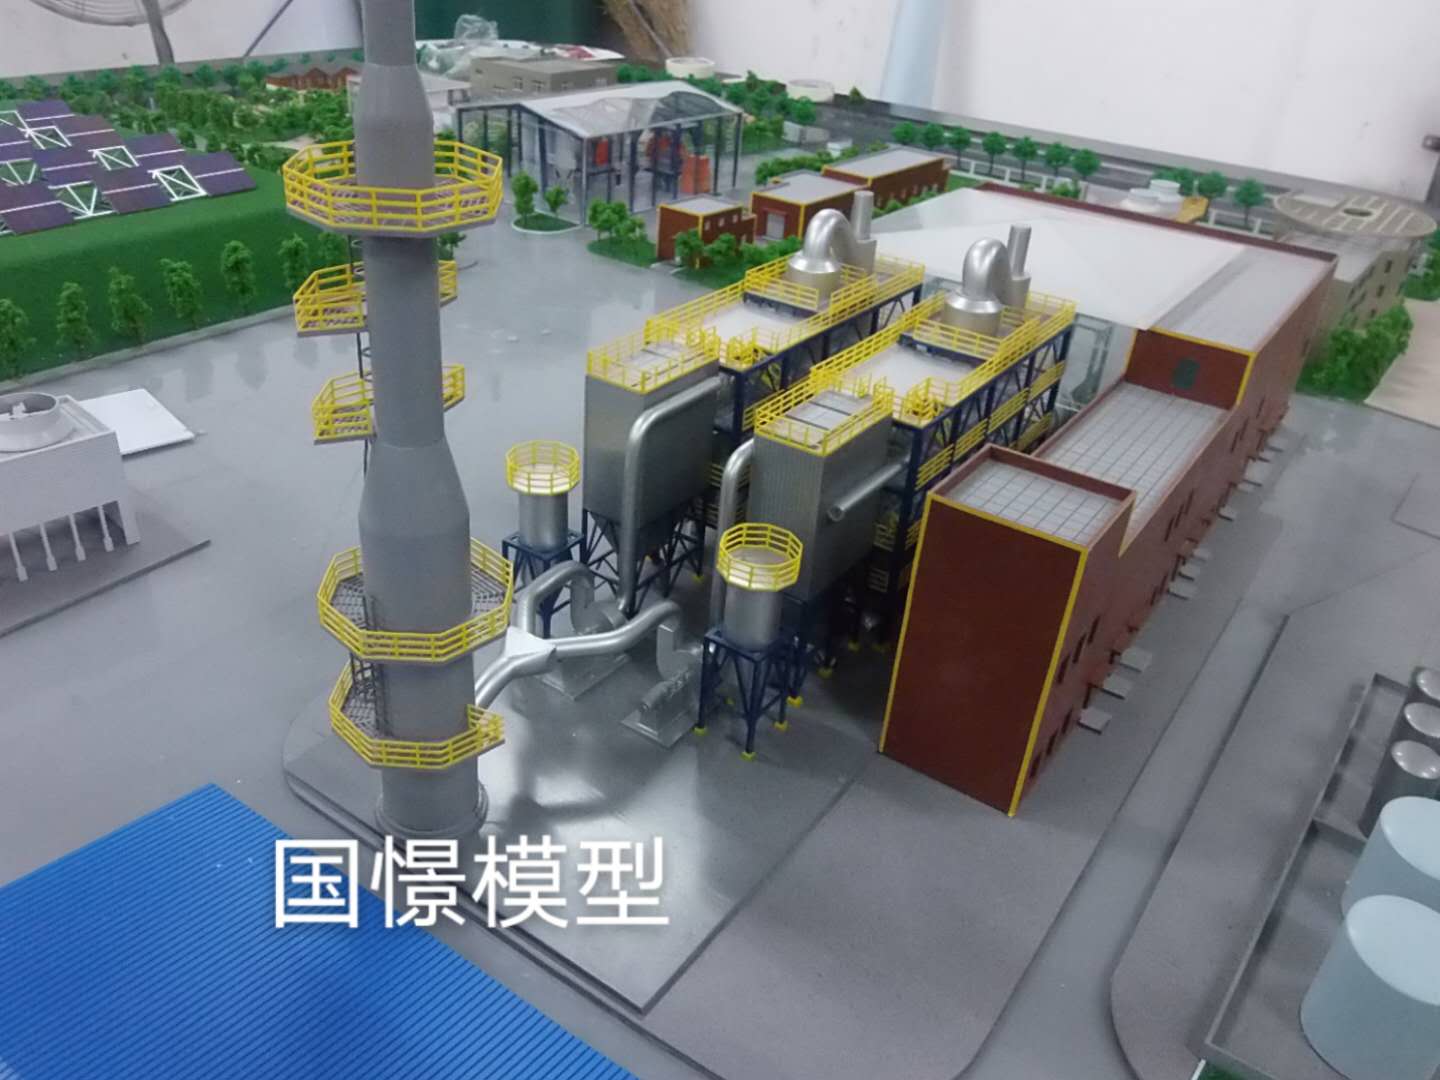 察雅县工业模型